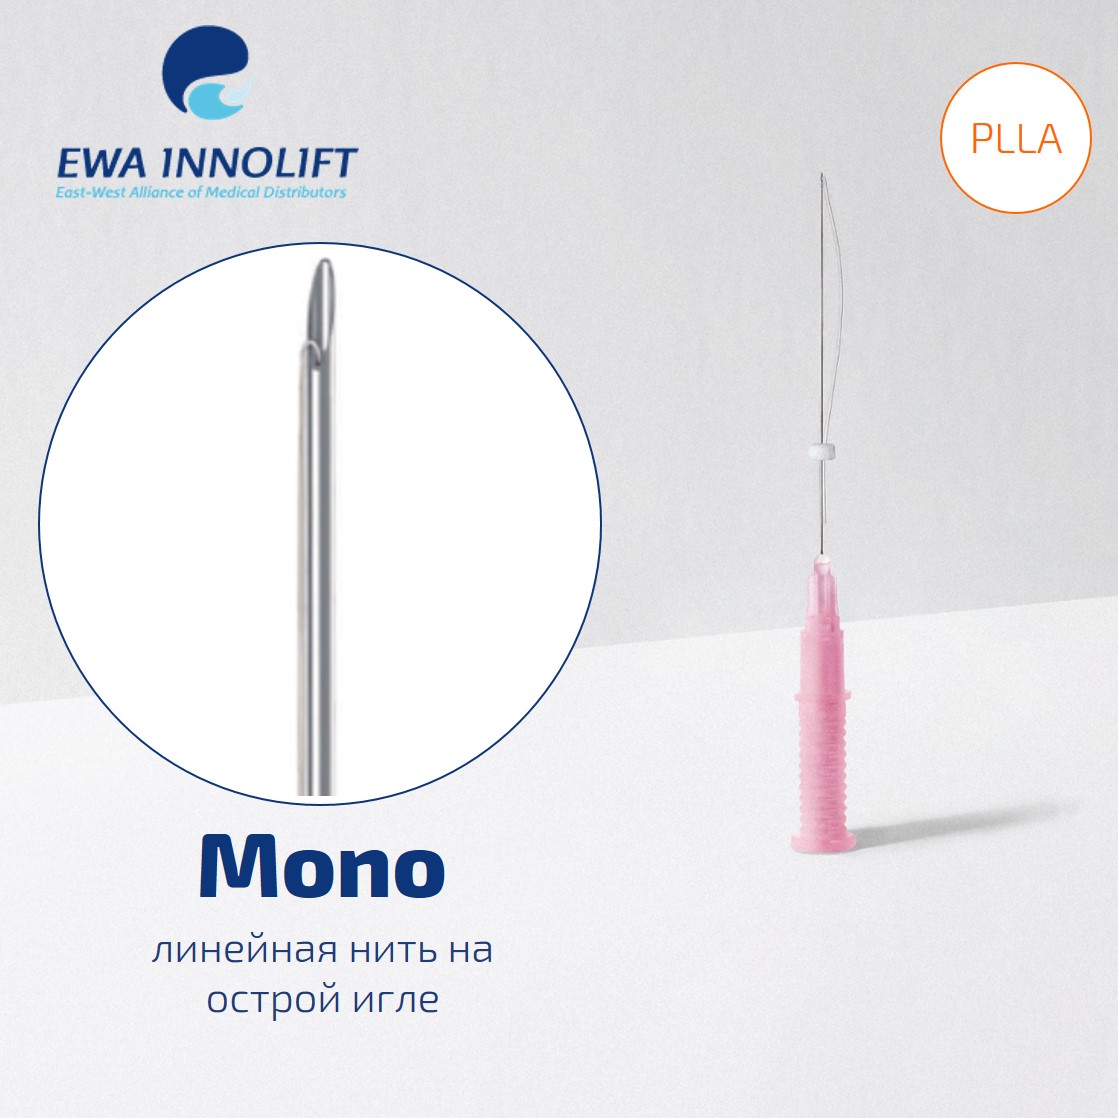 Нить из полимолочной кислоты обычная на полой игле Линейная/ Mono Grip (Sharp Needle) PLLA